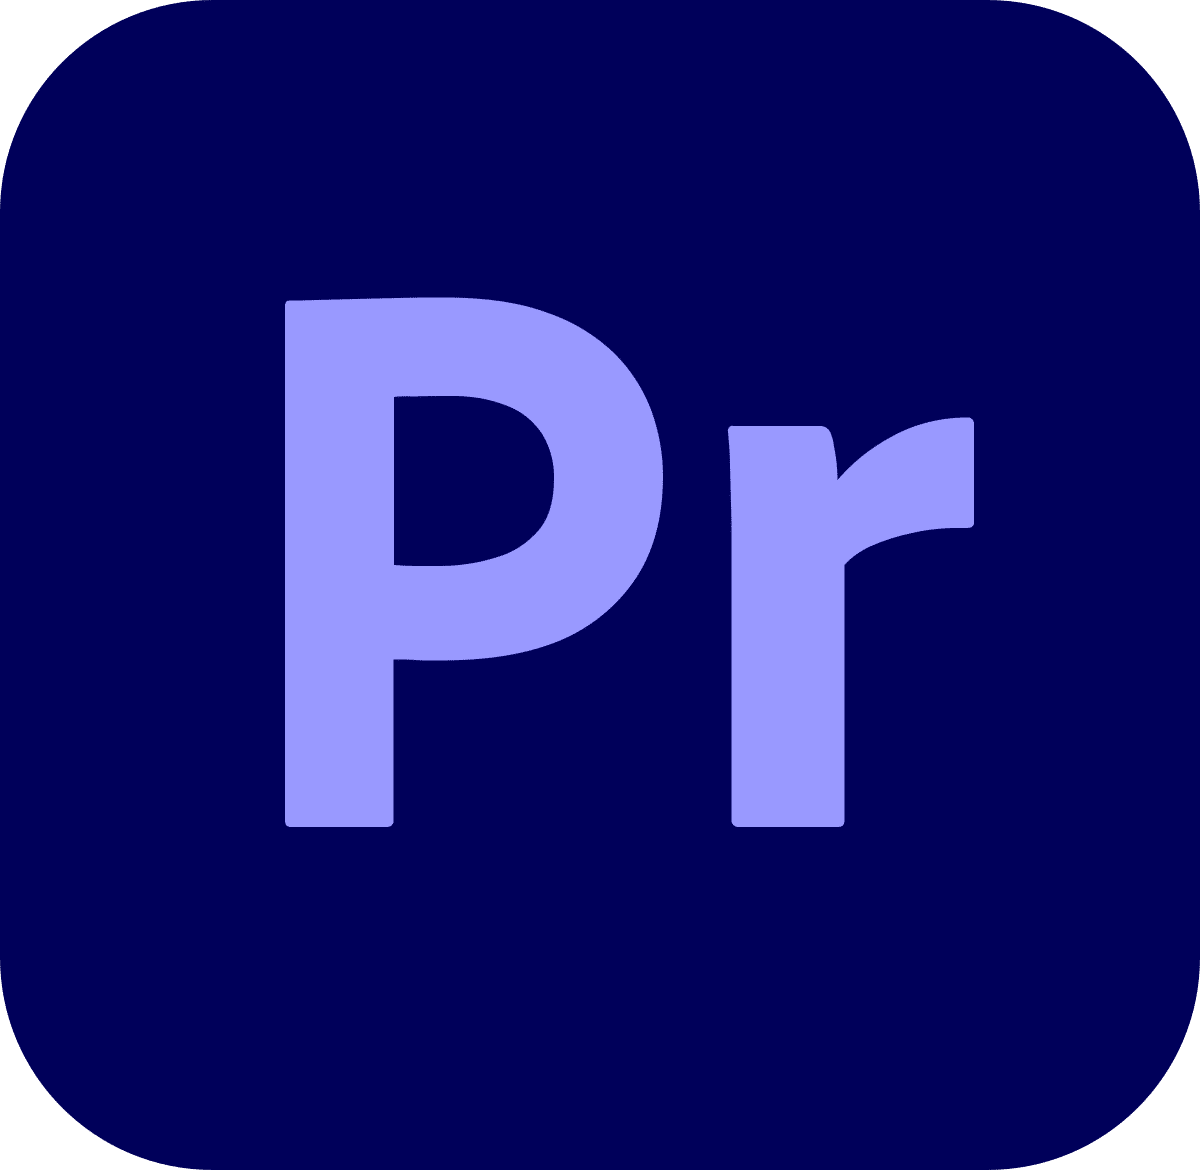 Adobe Premiere Pro CC Logo